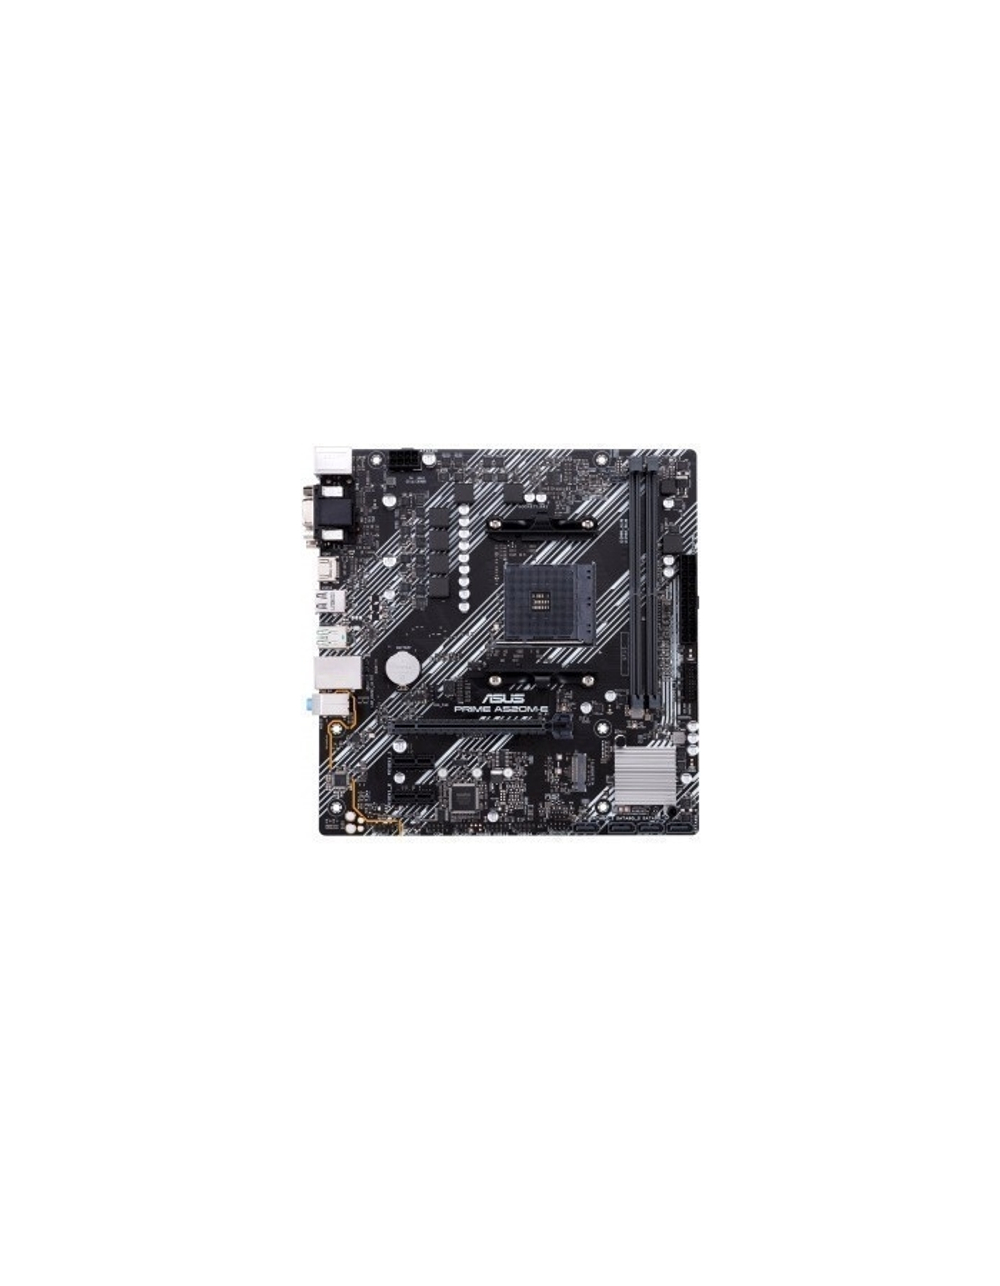 Asus PRIME A520M-E RTL (Soc-AM4 AMD A520 2xDDR4 mATX AC`97 8ch(7.1) GbLAN RAID+VGA+DVI+HDMI)